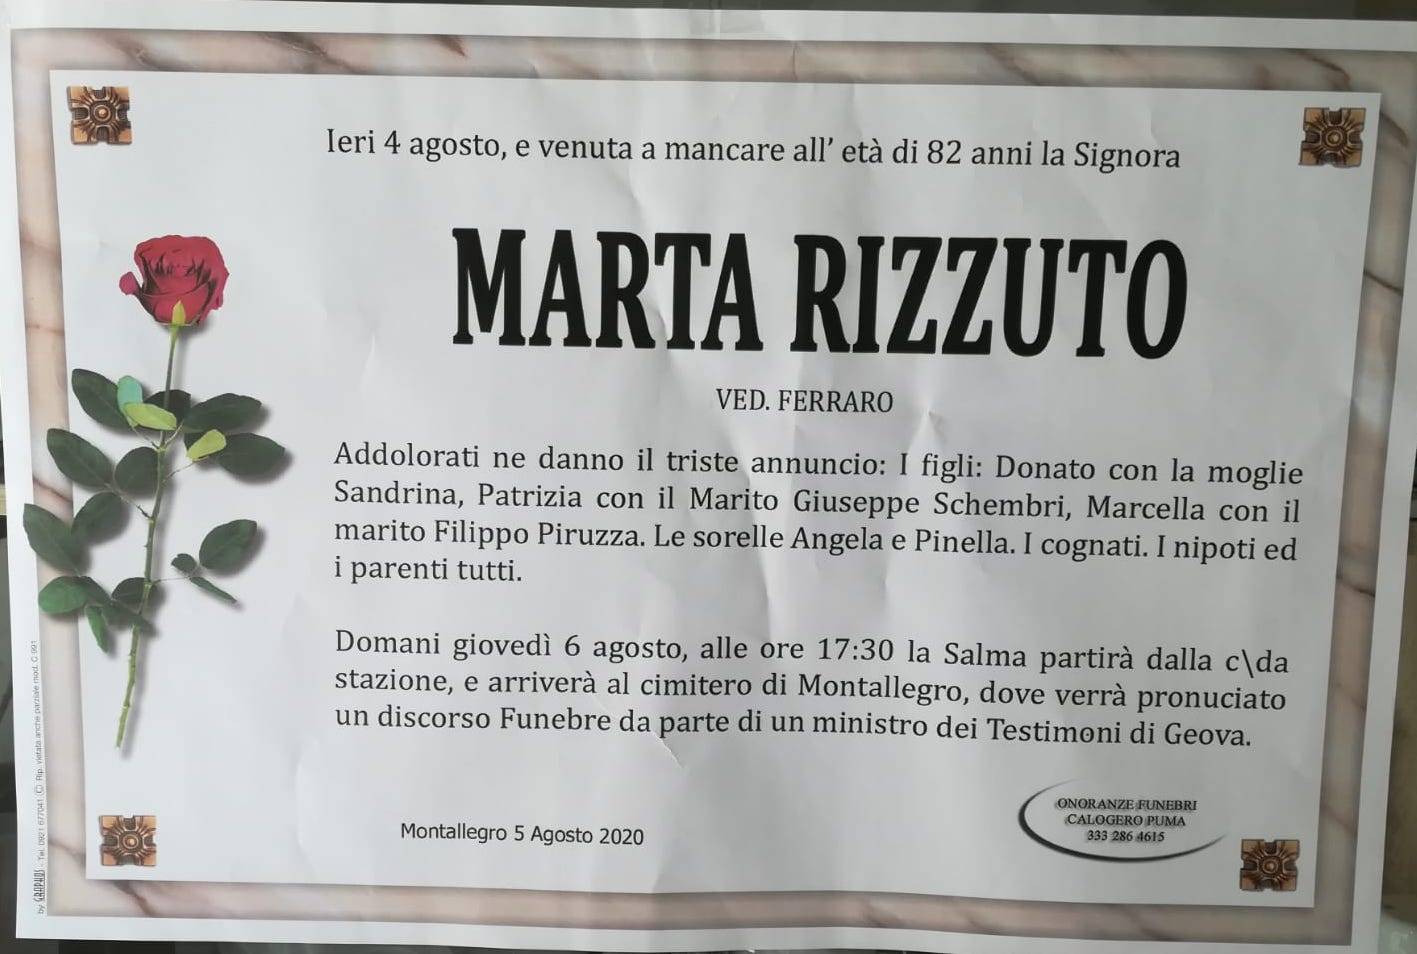 Marta Rizzuto